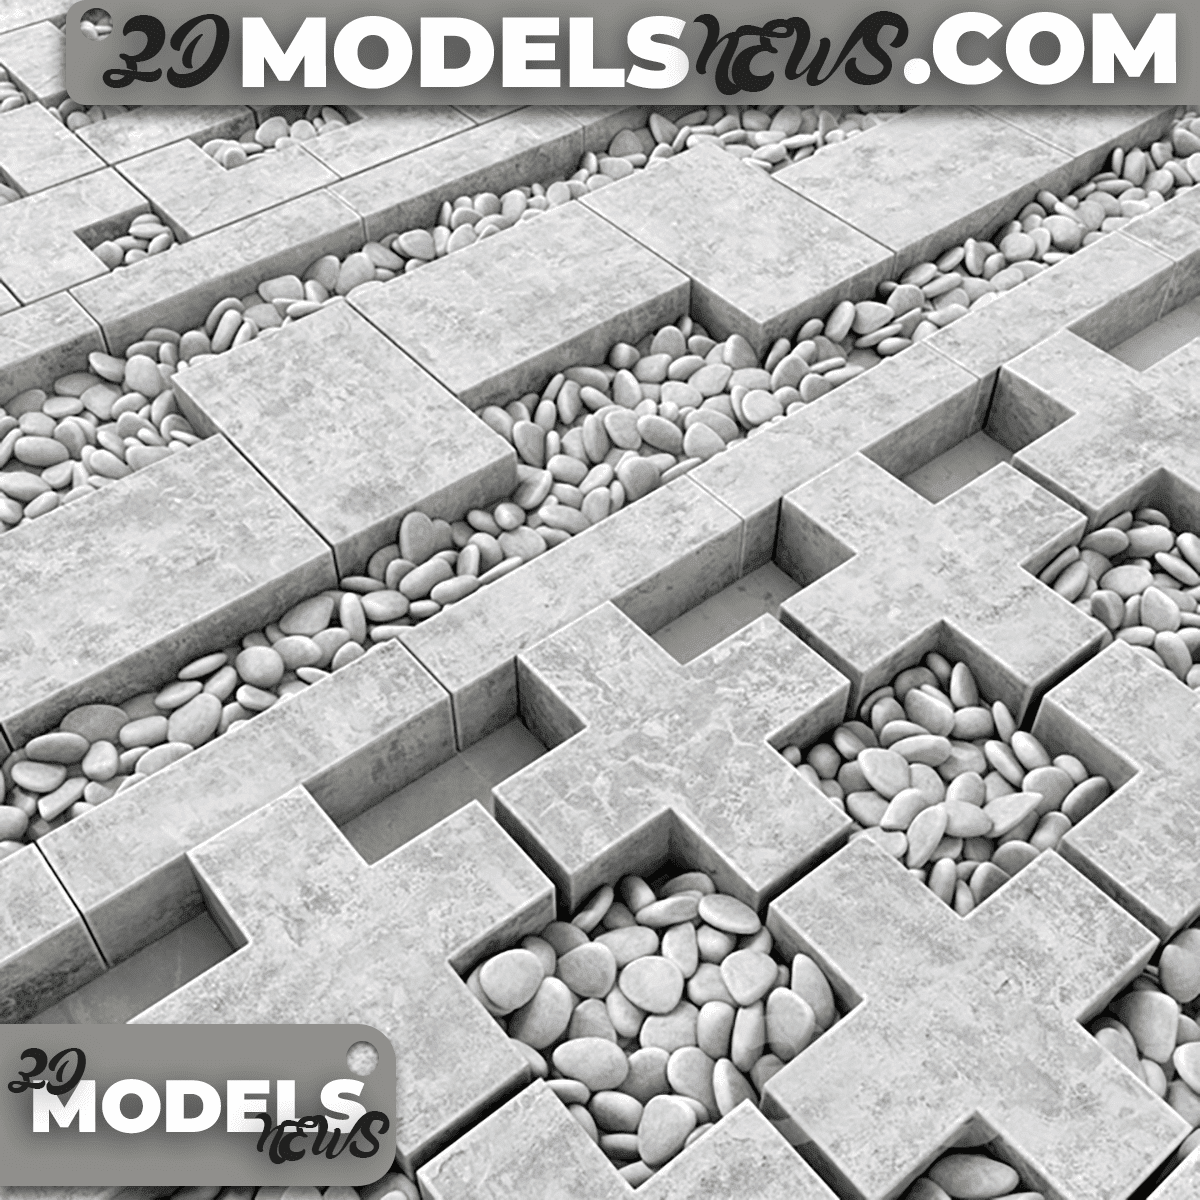 Concrete border construction model 2